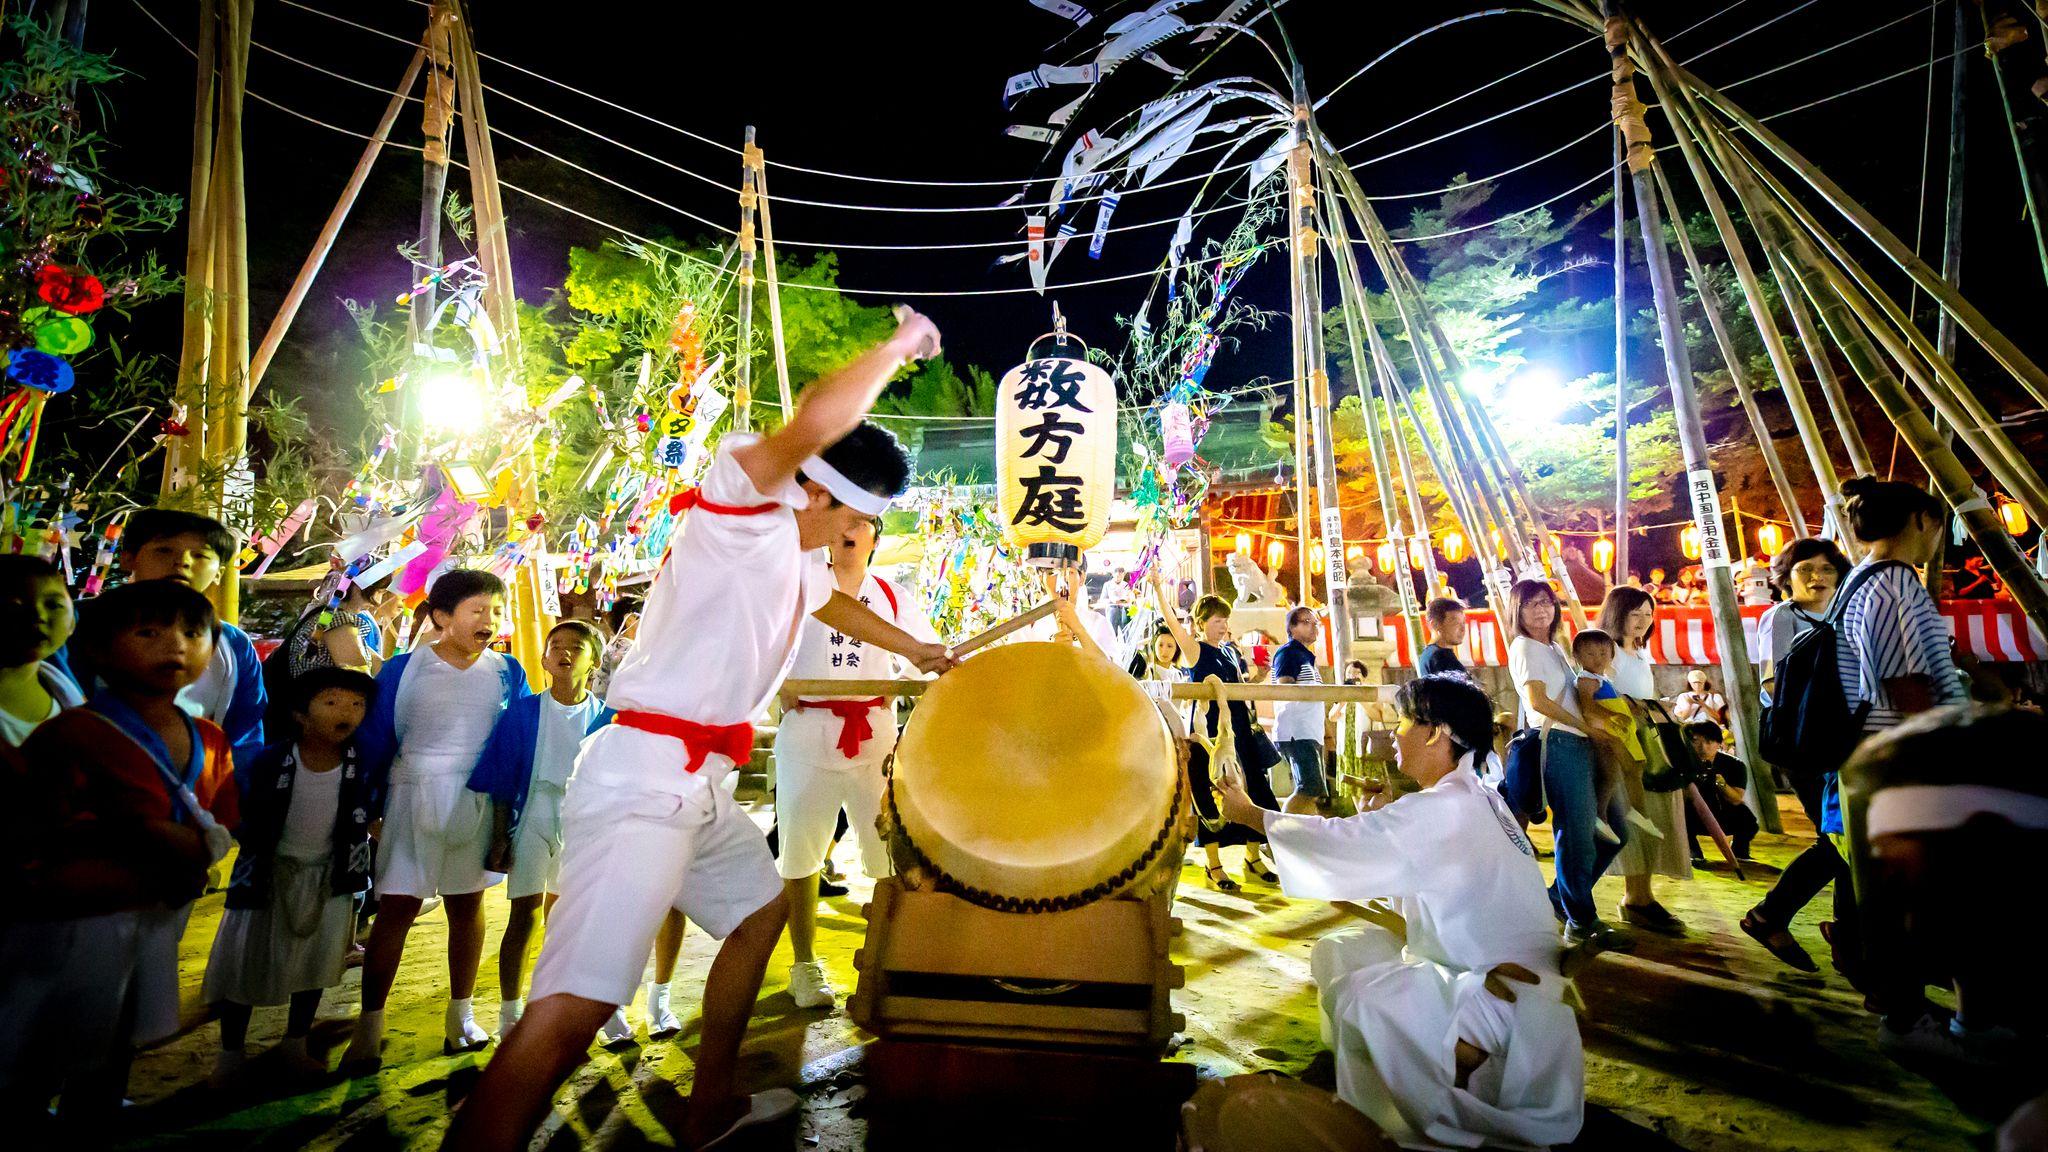 Suhoteisai Festival, Shimonoseki City, Yamaguchi